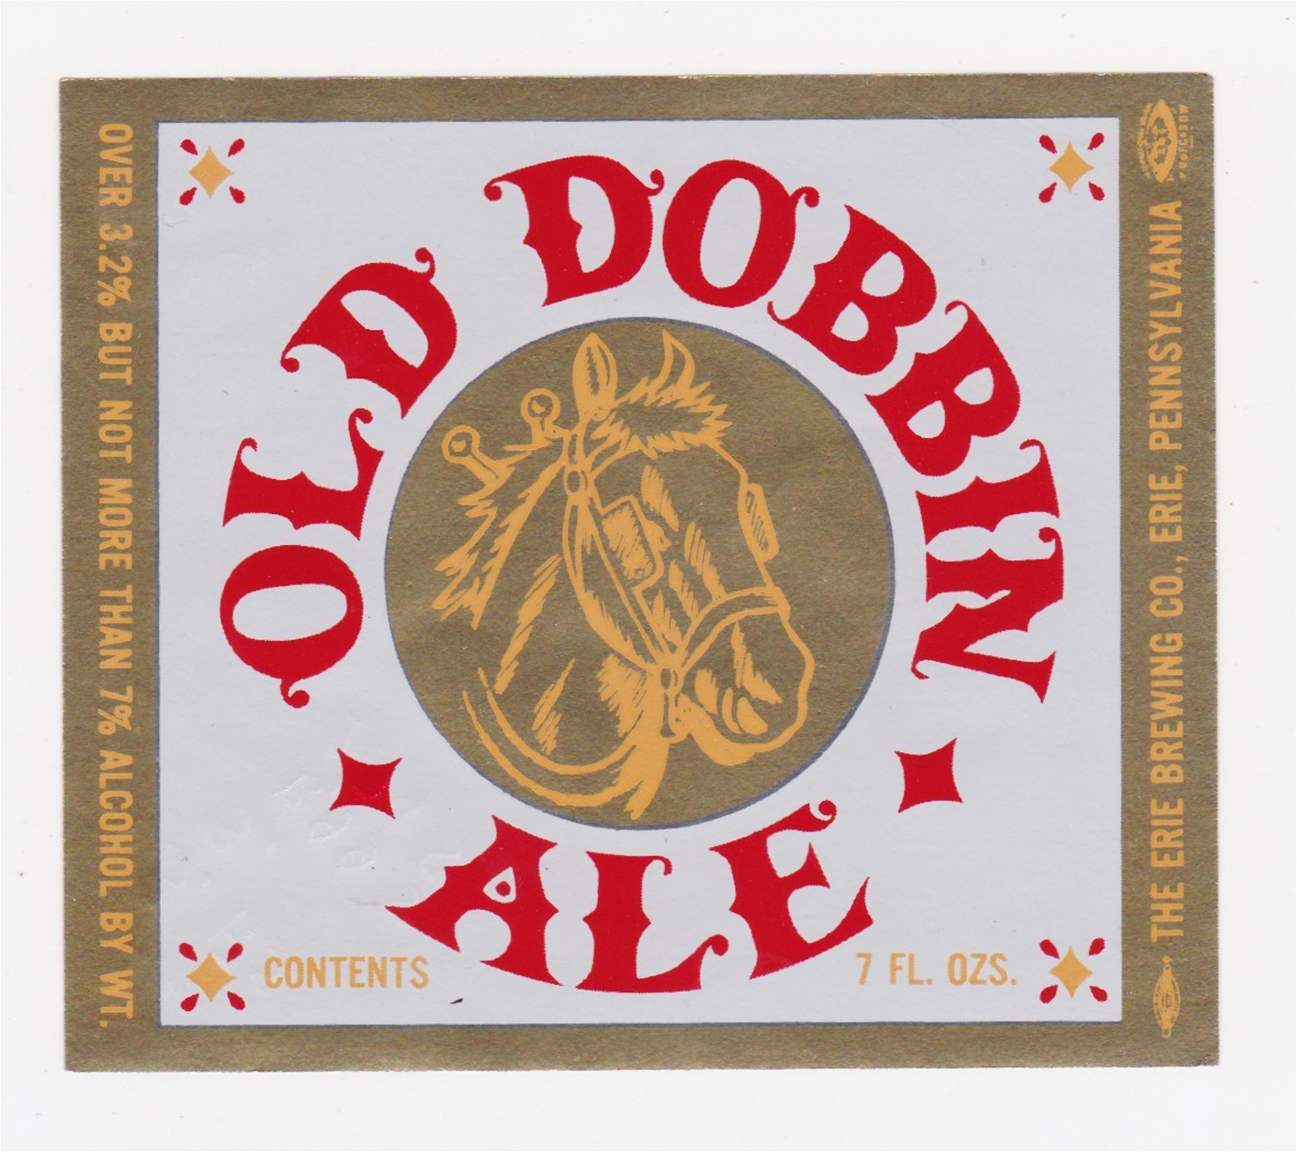 Old Dobbin Beer Label